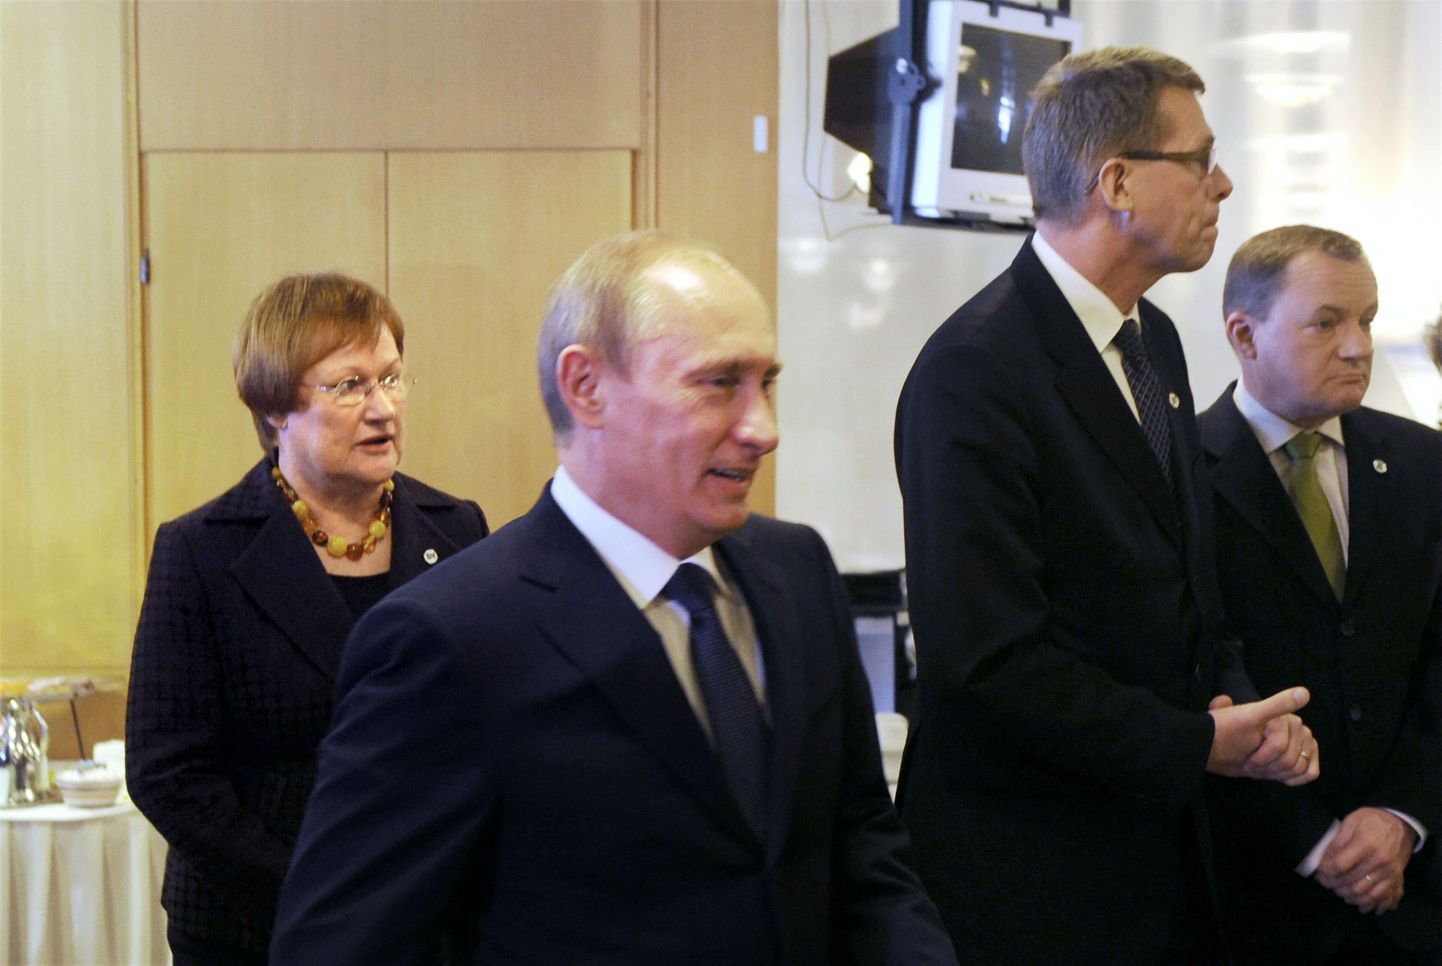 Venemaa peaminister Vladimir Putin (keskel), Soome president Tarja Halonen ja Soome valitsusjuht Matti Vanhanen.